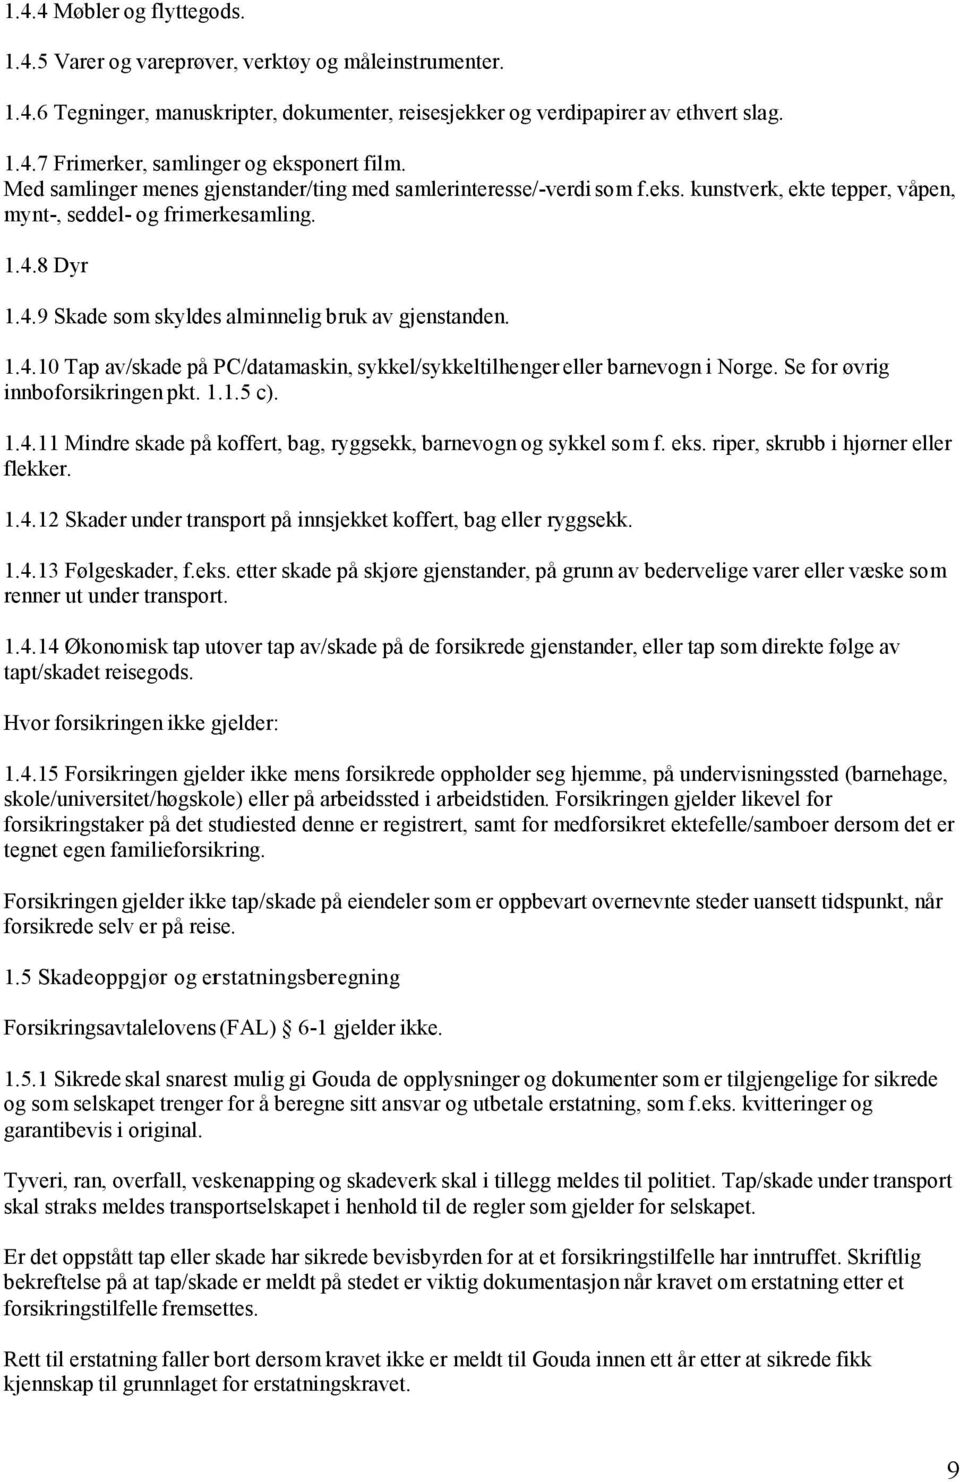 1.4.10 Tap av/skade på PC/datamaskin, sykkel/sykkeltilhenger eller barnevogn i Norge. Se for øvrig innboforsikringen pkt. 1.1.5 c). 1.4.11 Mindre skade på koffert, bag, ryggsekk, barnevogn og sykkel som f.